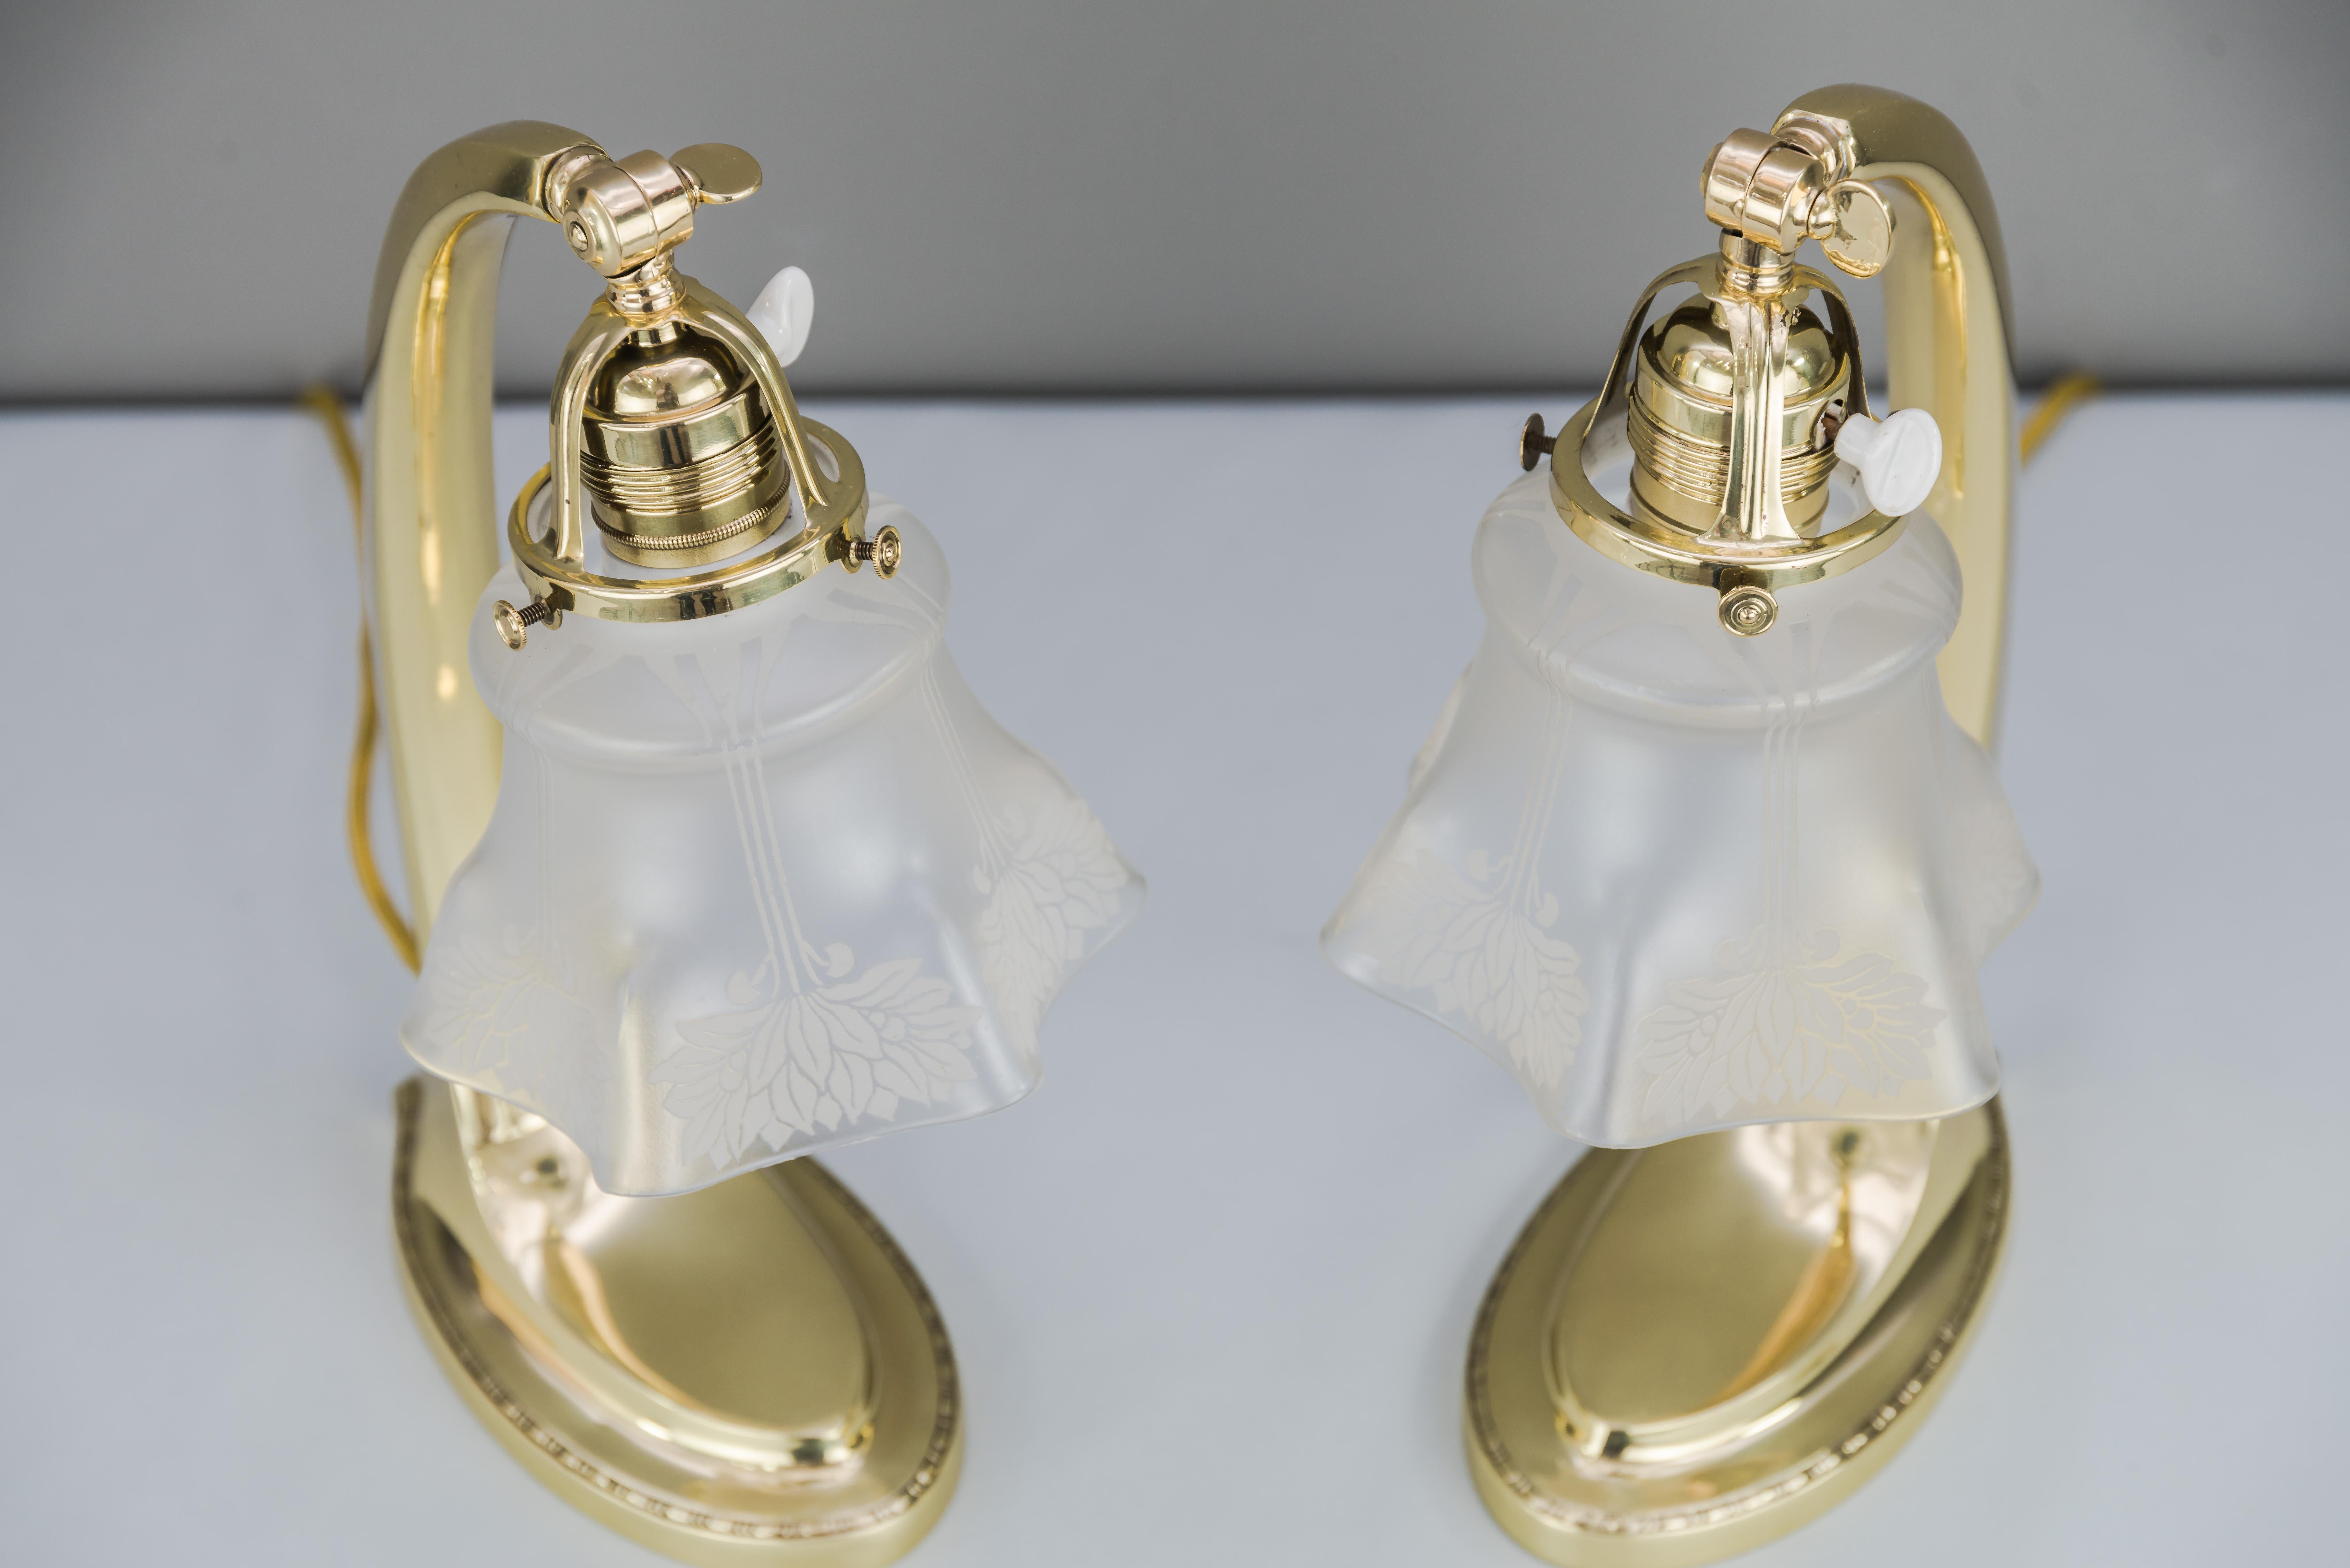 Zwei Jugendstil-Tischlampen 1907 mit Original-Glasschirmen
Poliert und einbrennlackiert.